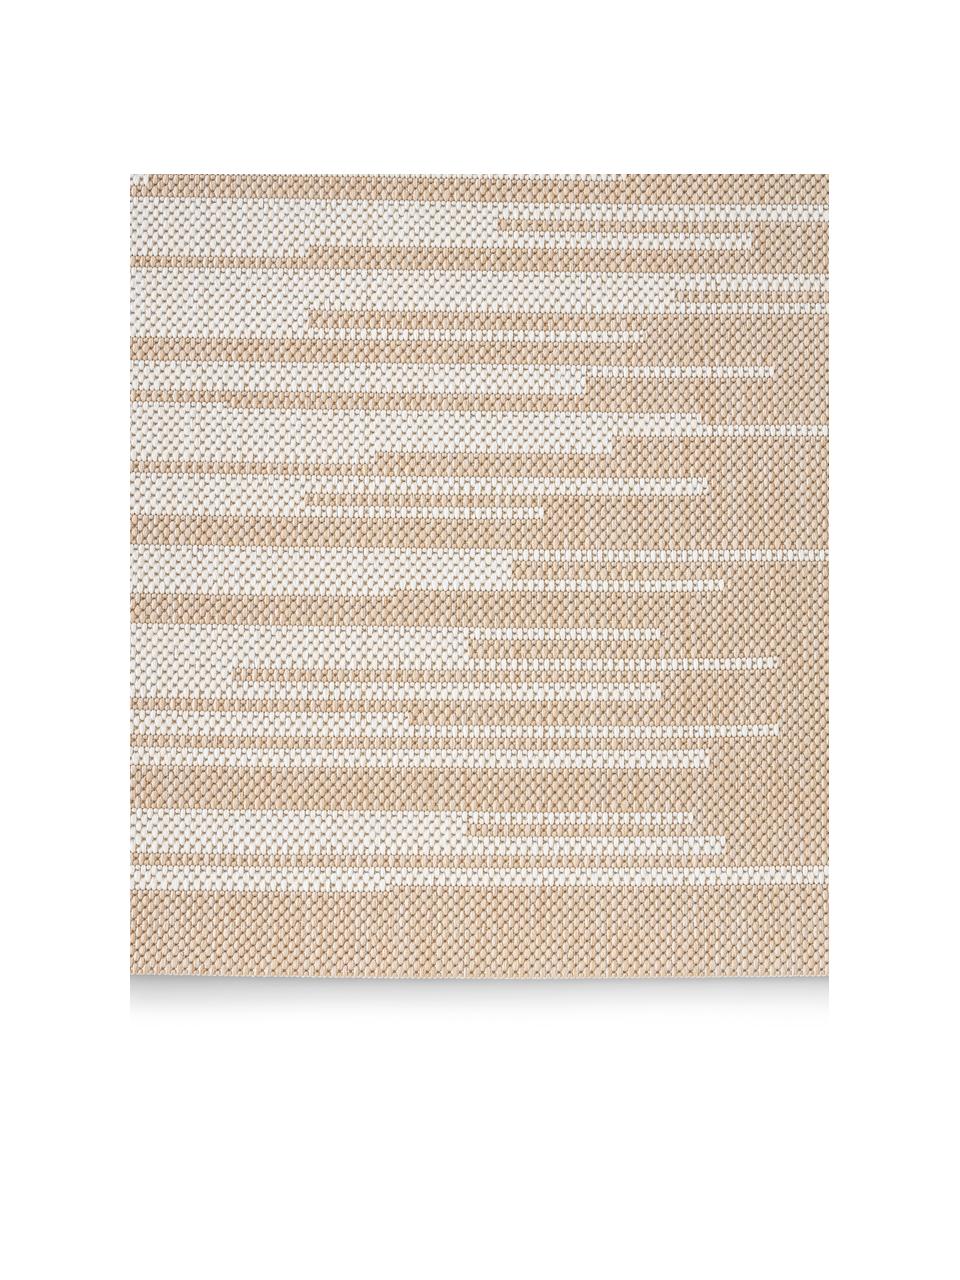 Tappeto da interno-esterno con motivo grafico Praiano, Beige, bianco, Larg. 80 x Lung. 150 cm (taglia XS)